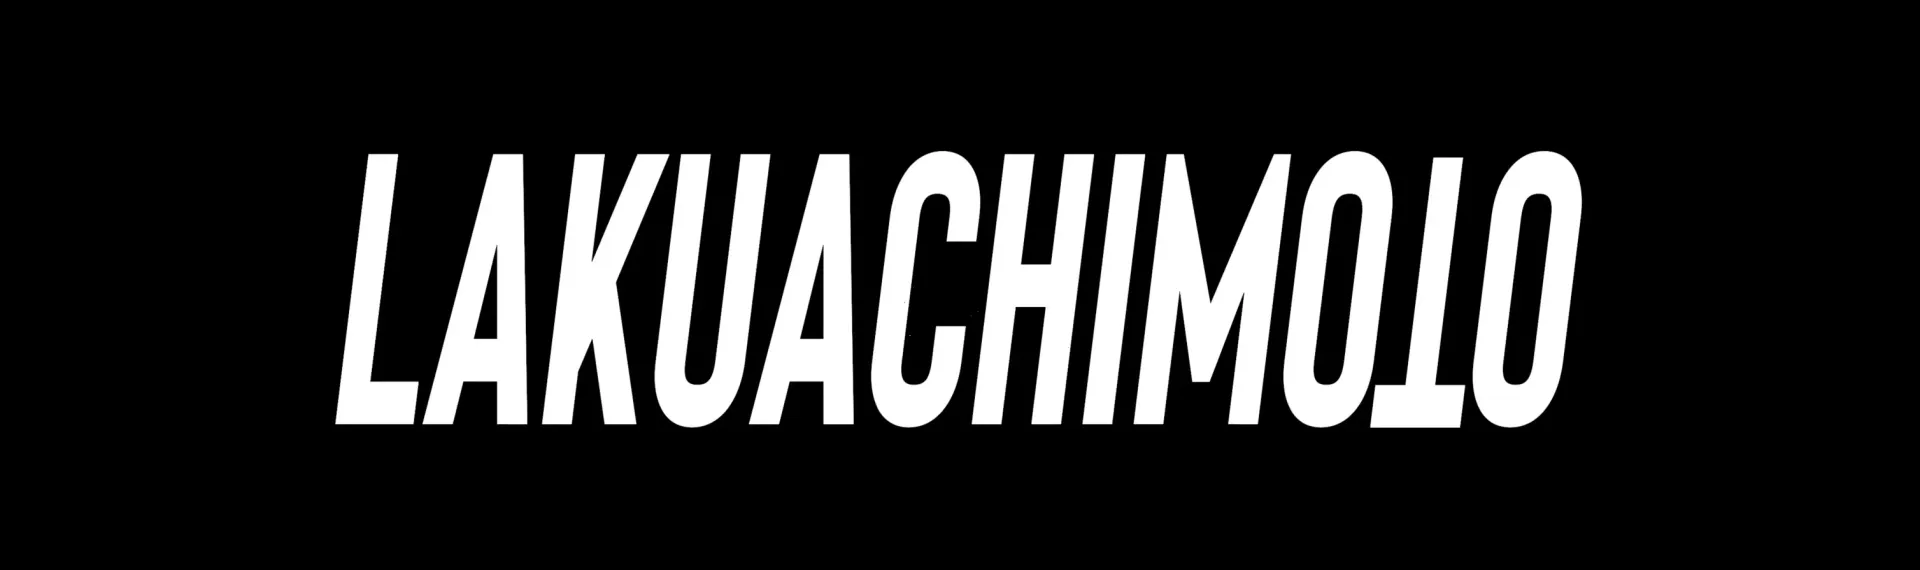 LAKUACHIMOTO logo